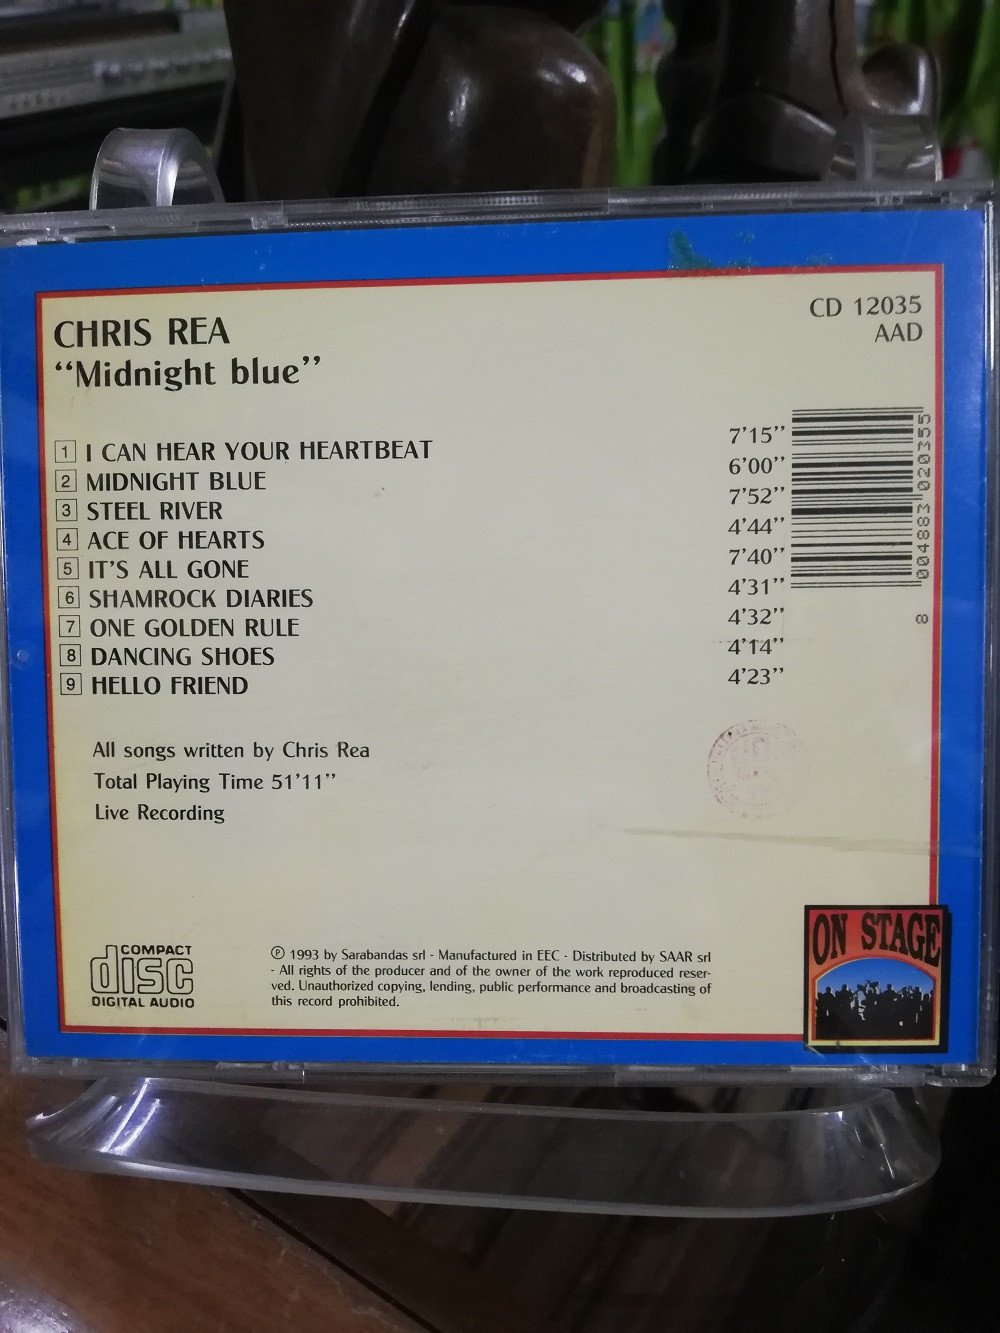 Imagen CD CHRIS REA - MIDNIGHT BLUE 2